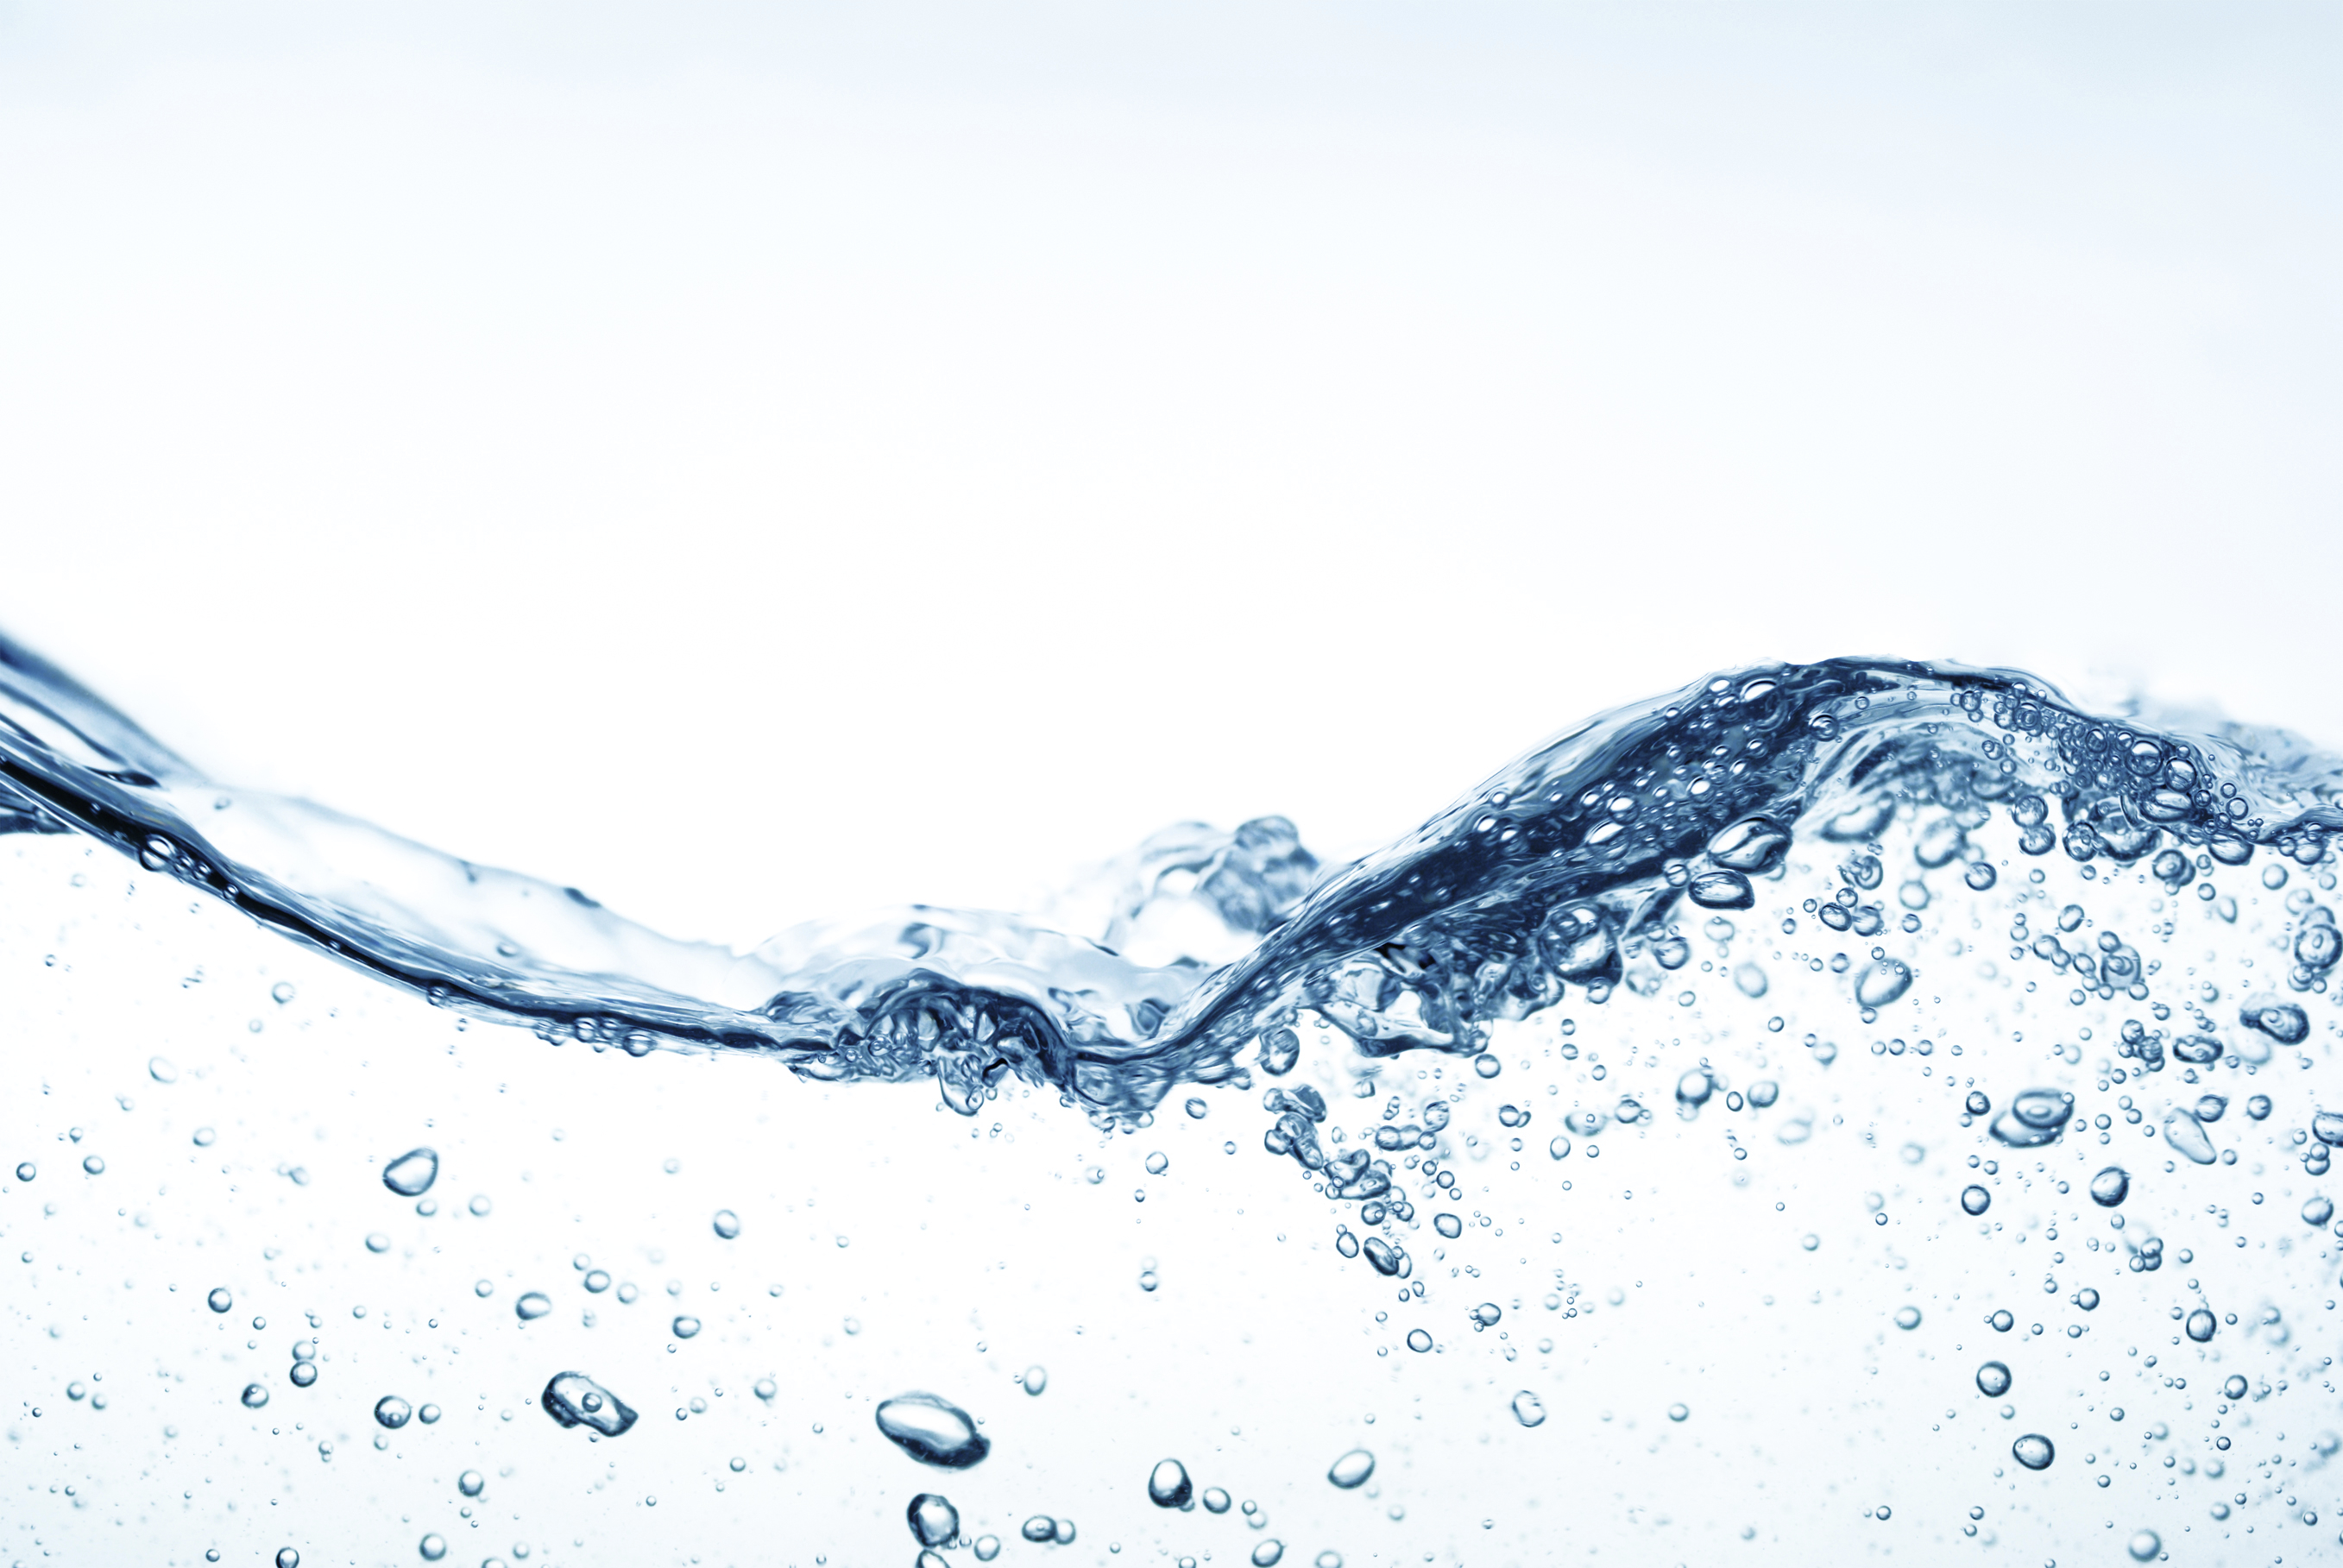 Ludzkie ciało zbudowane jest z wody – wartości procentowe wody w organizmie